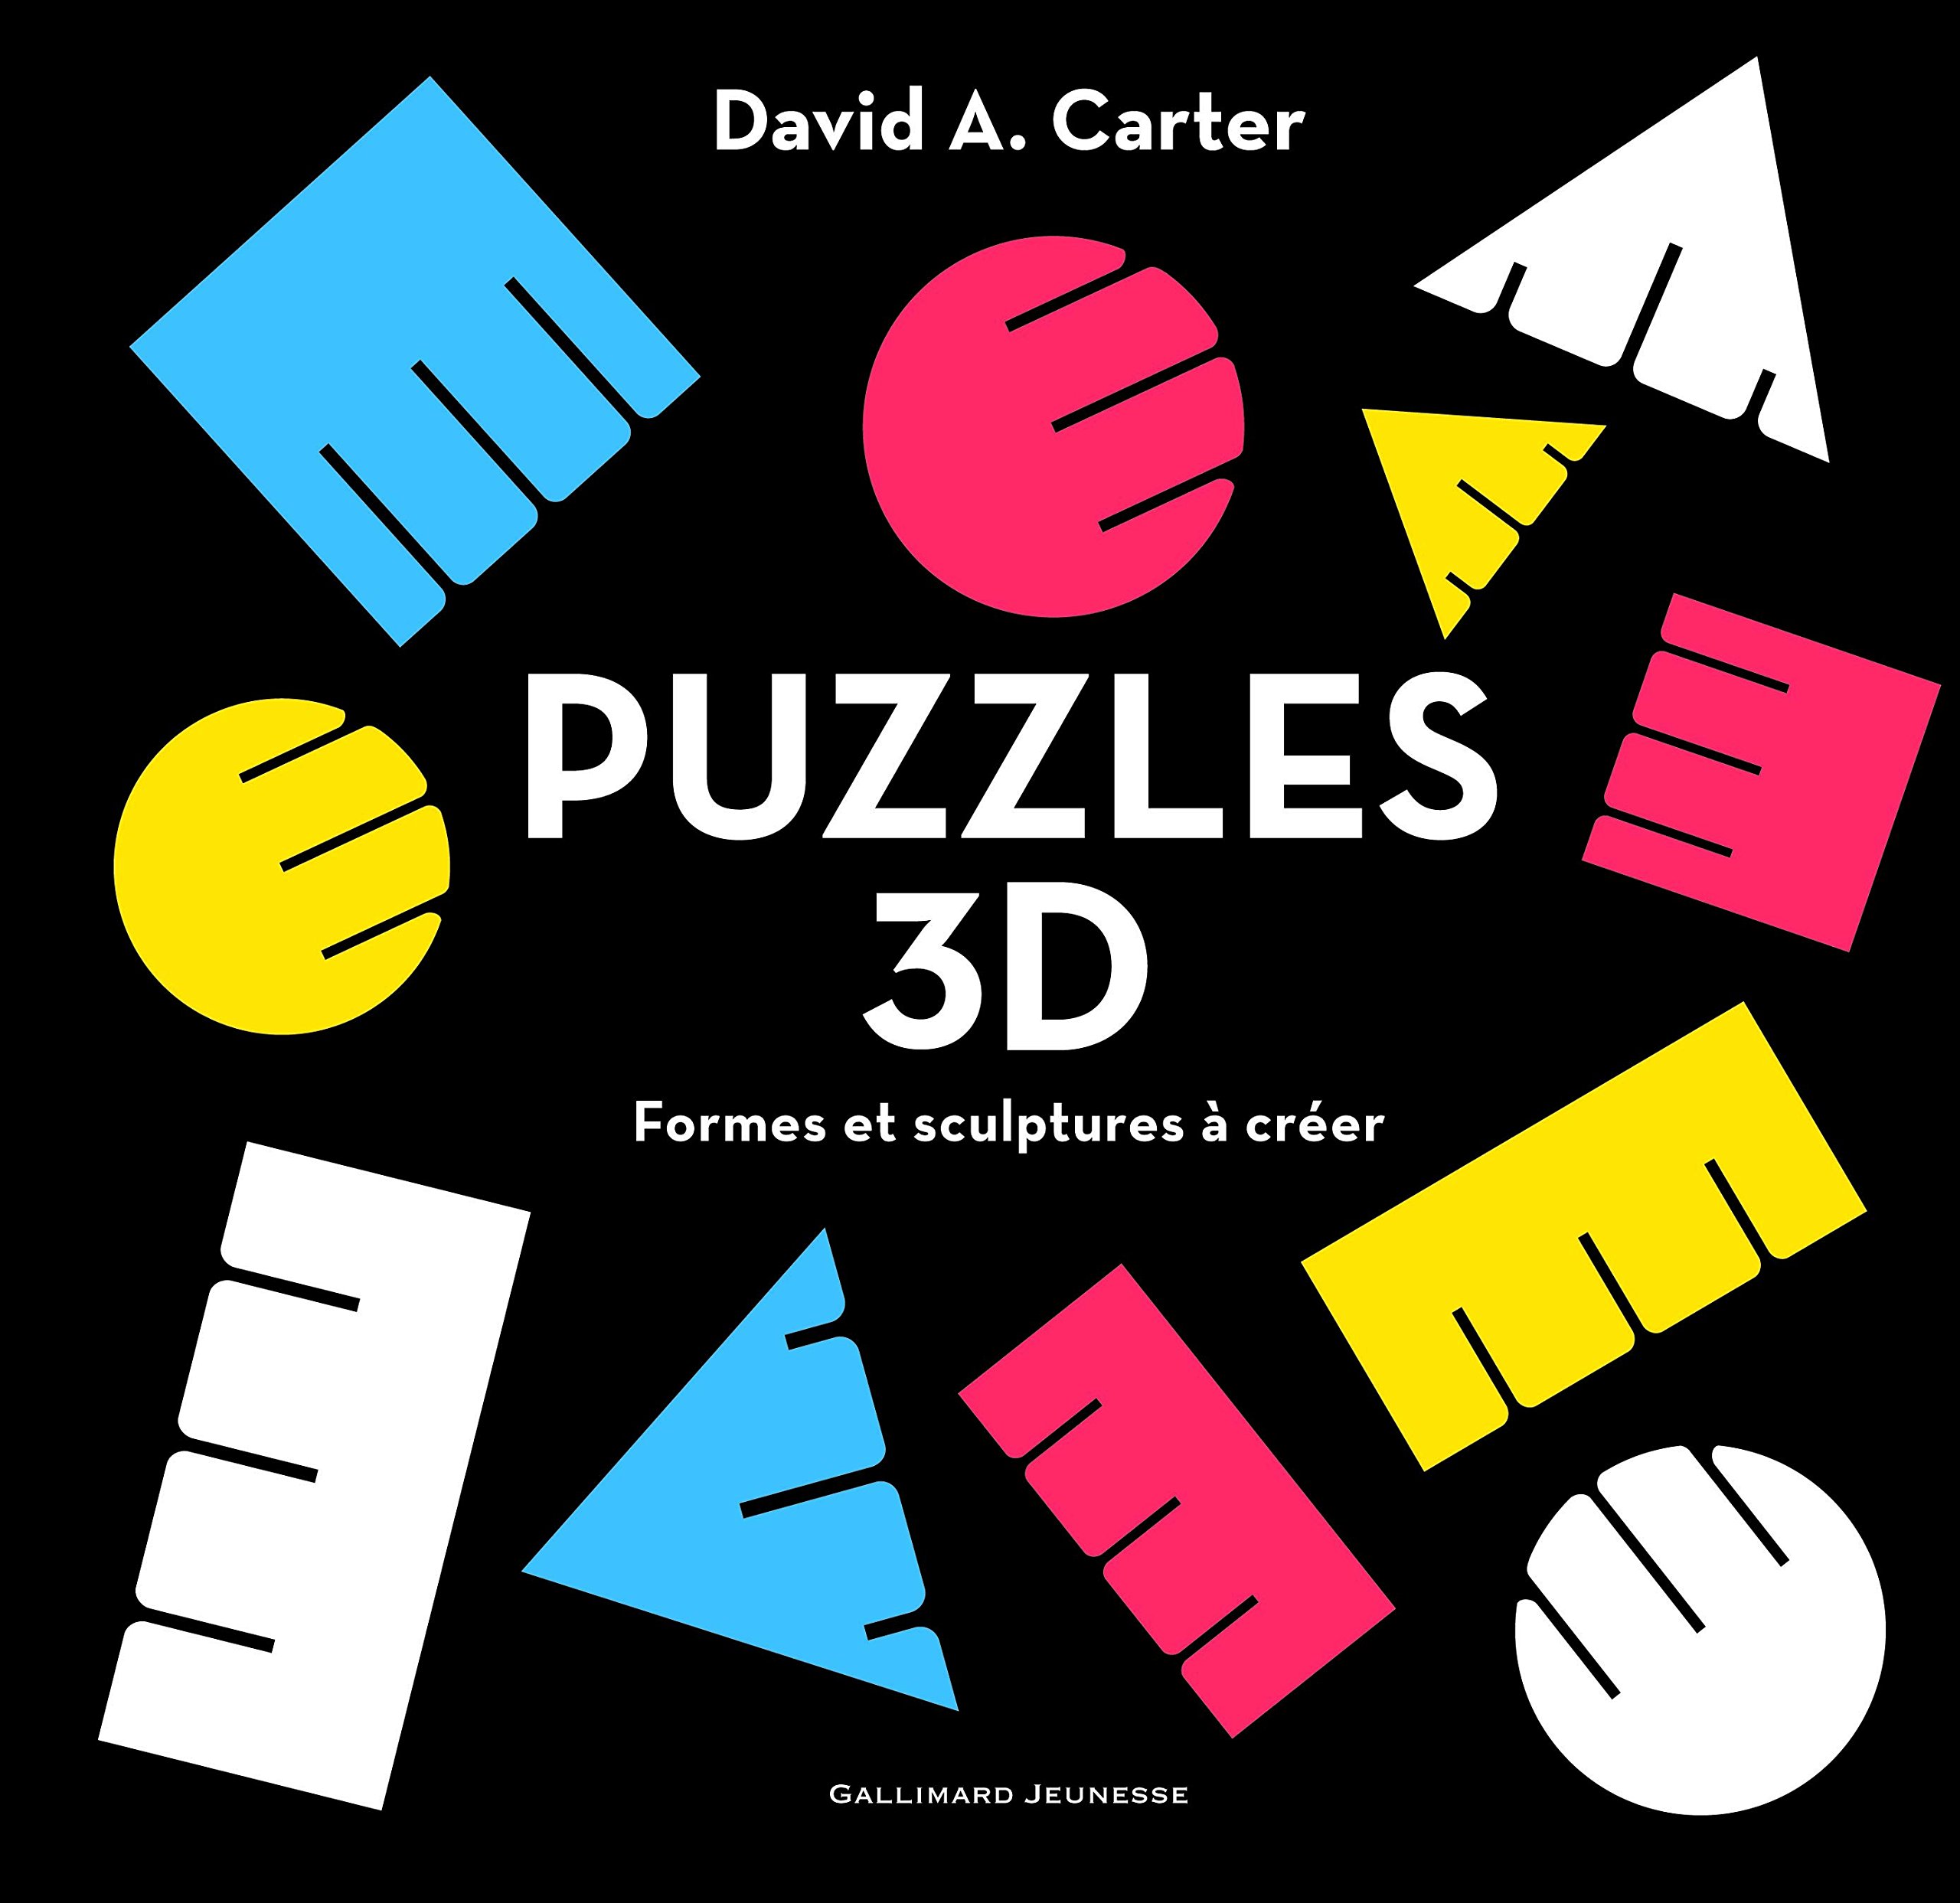 Puzzles 3D Formes et sculptures à créer, David A. Carter, Gallimard Jeunesse